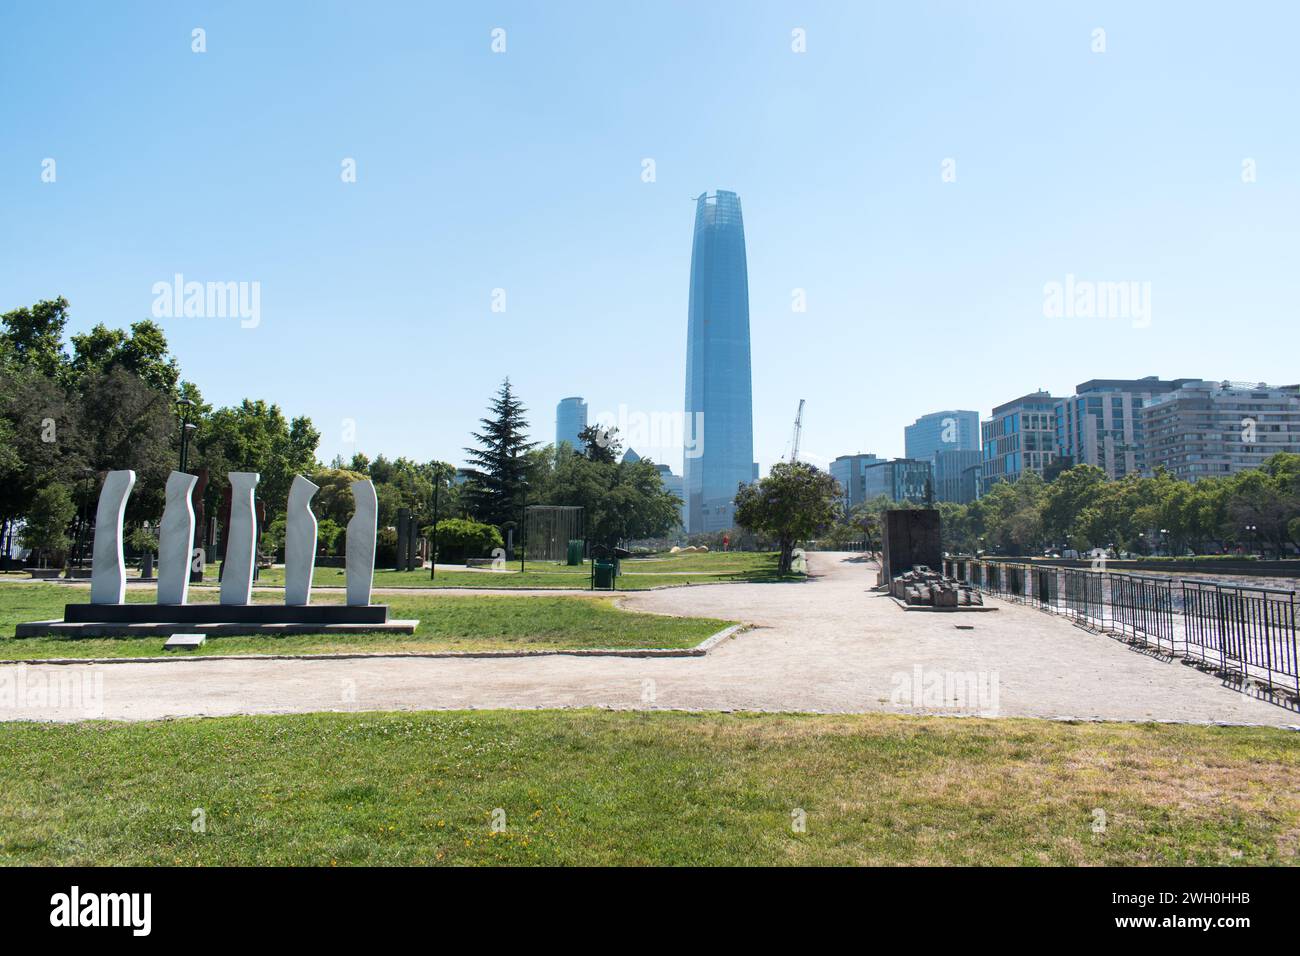 El Parque de las Esculturas, situato a Santiago, Cile, è un importante parco di sculture all'aperto che presenta una vasta collezione di opere d'arte contemporanea. Foto Stock